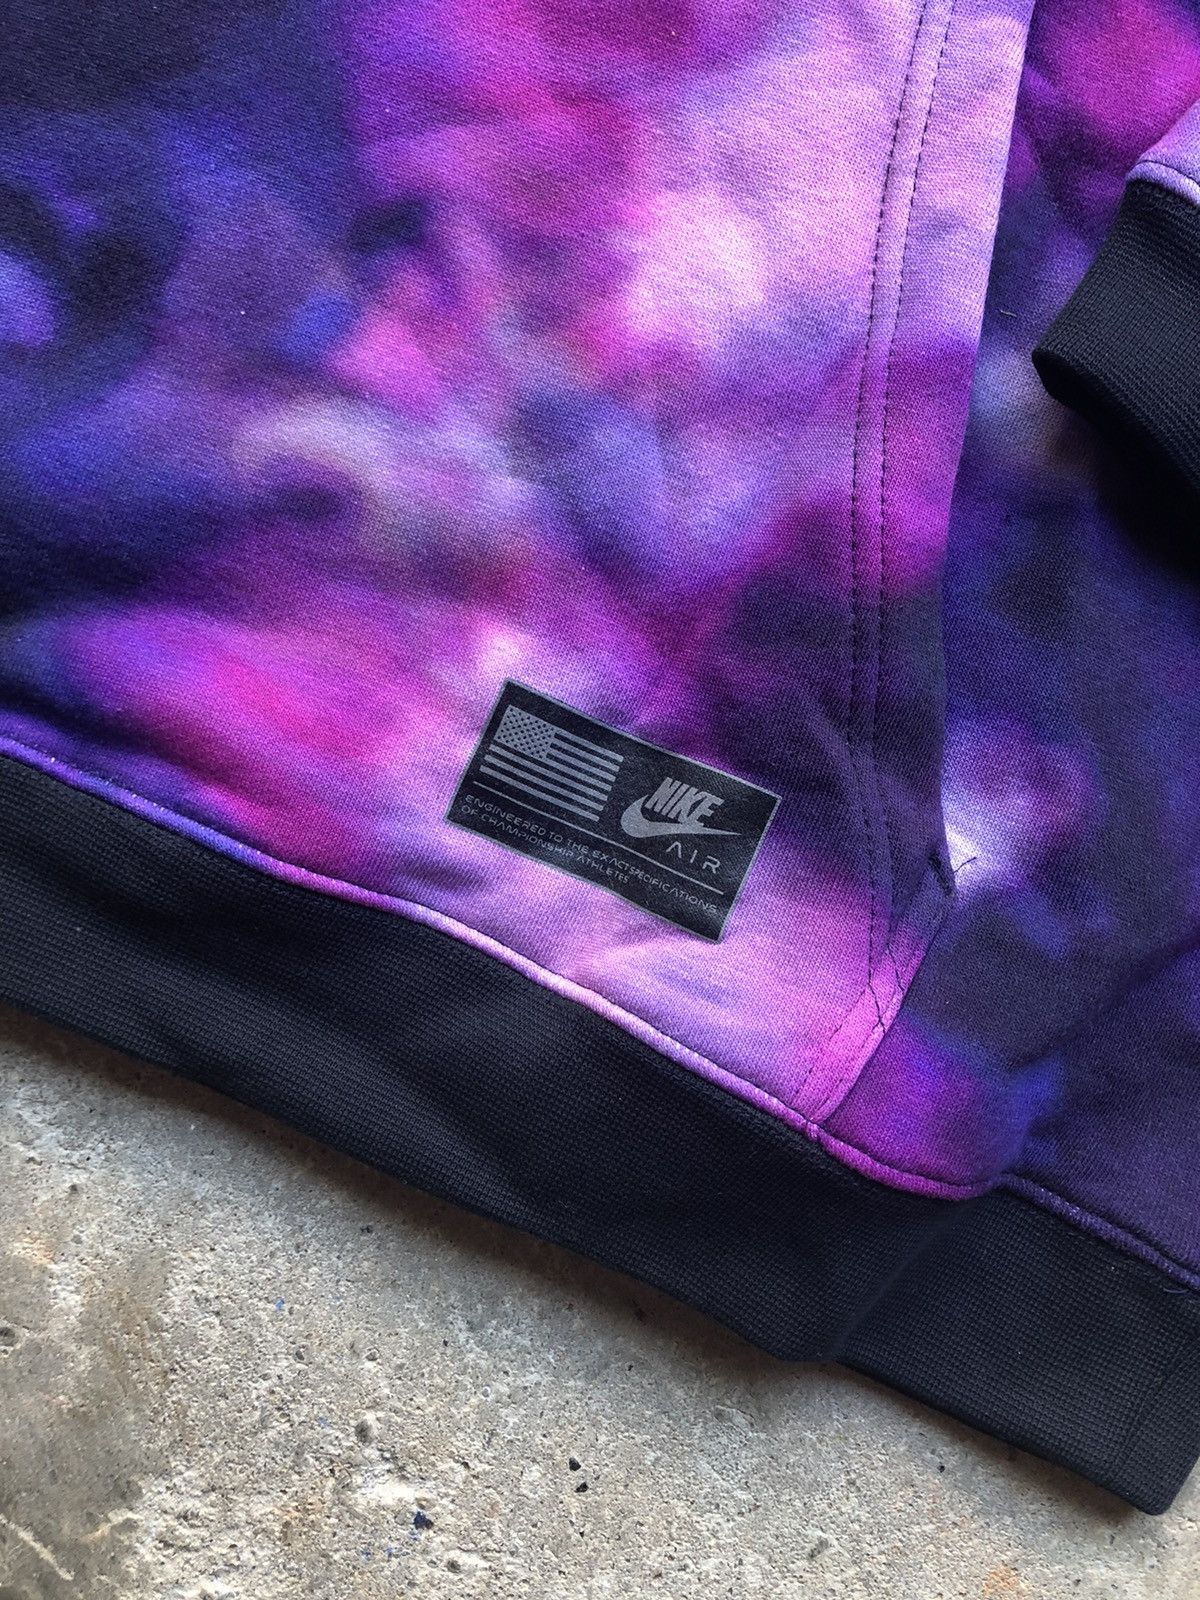 Nike Nike Sportswear “NASA” galaxy Purple Tie Dye hoodie Size US XL / EU 56 / 4 - 4 Preview